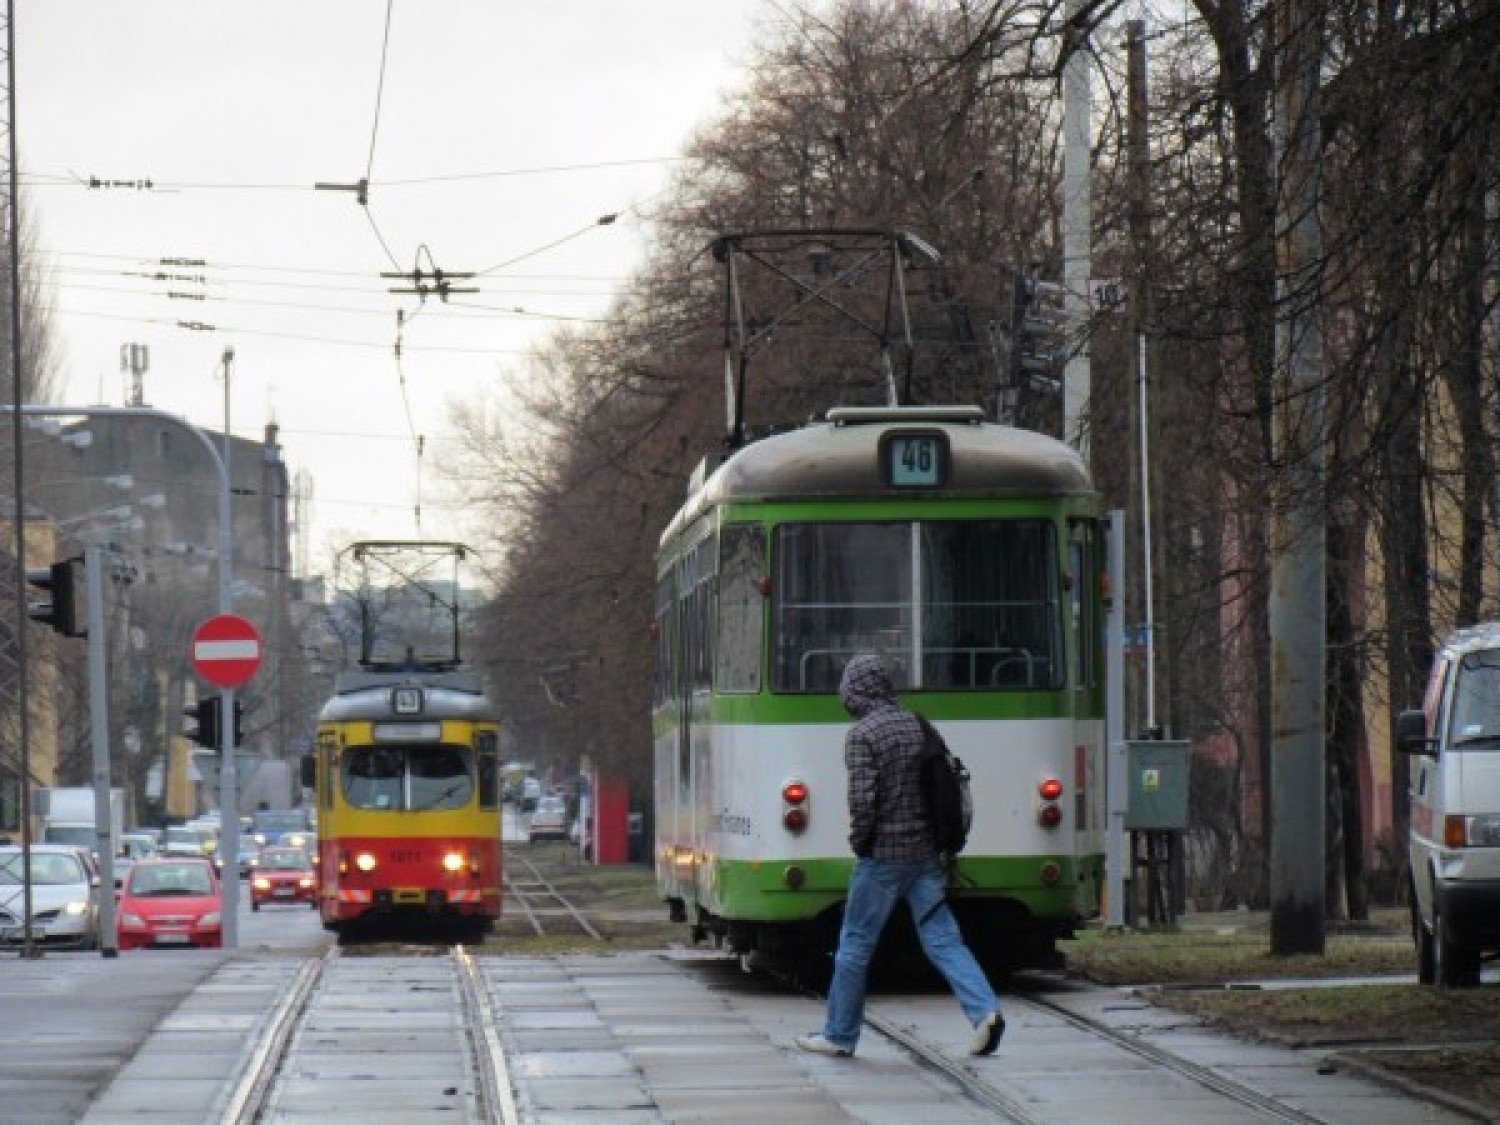 Znów bez nocnych kursów linii 46 do Ozorkowa | Łódź Nasze Miasto